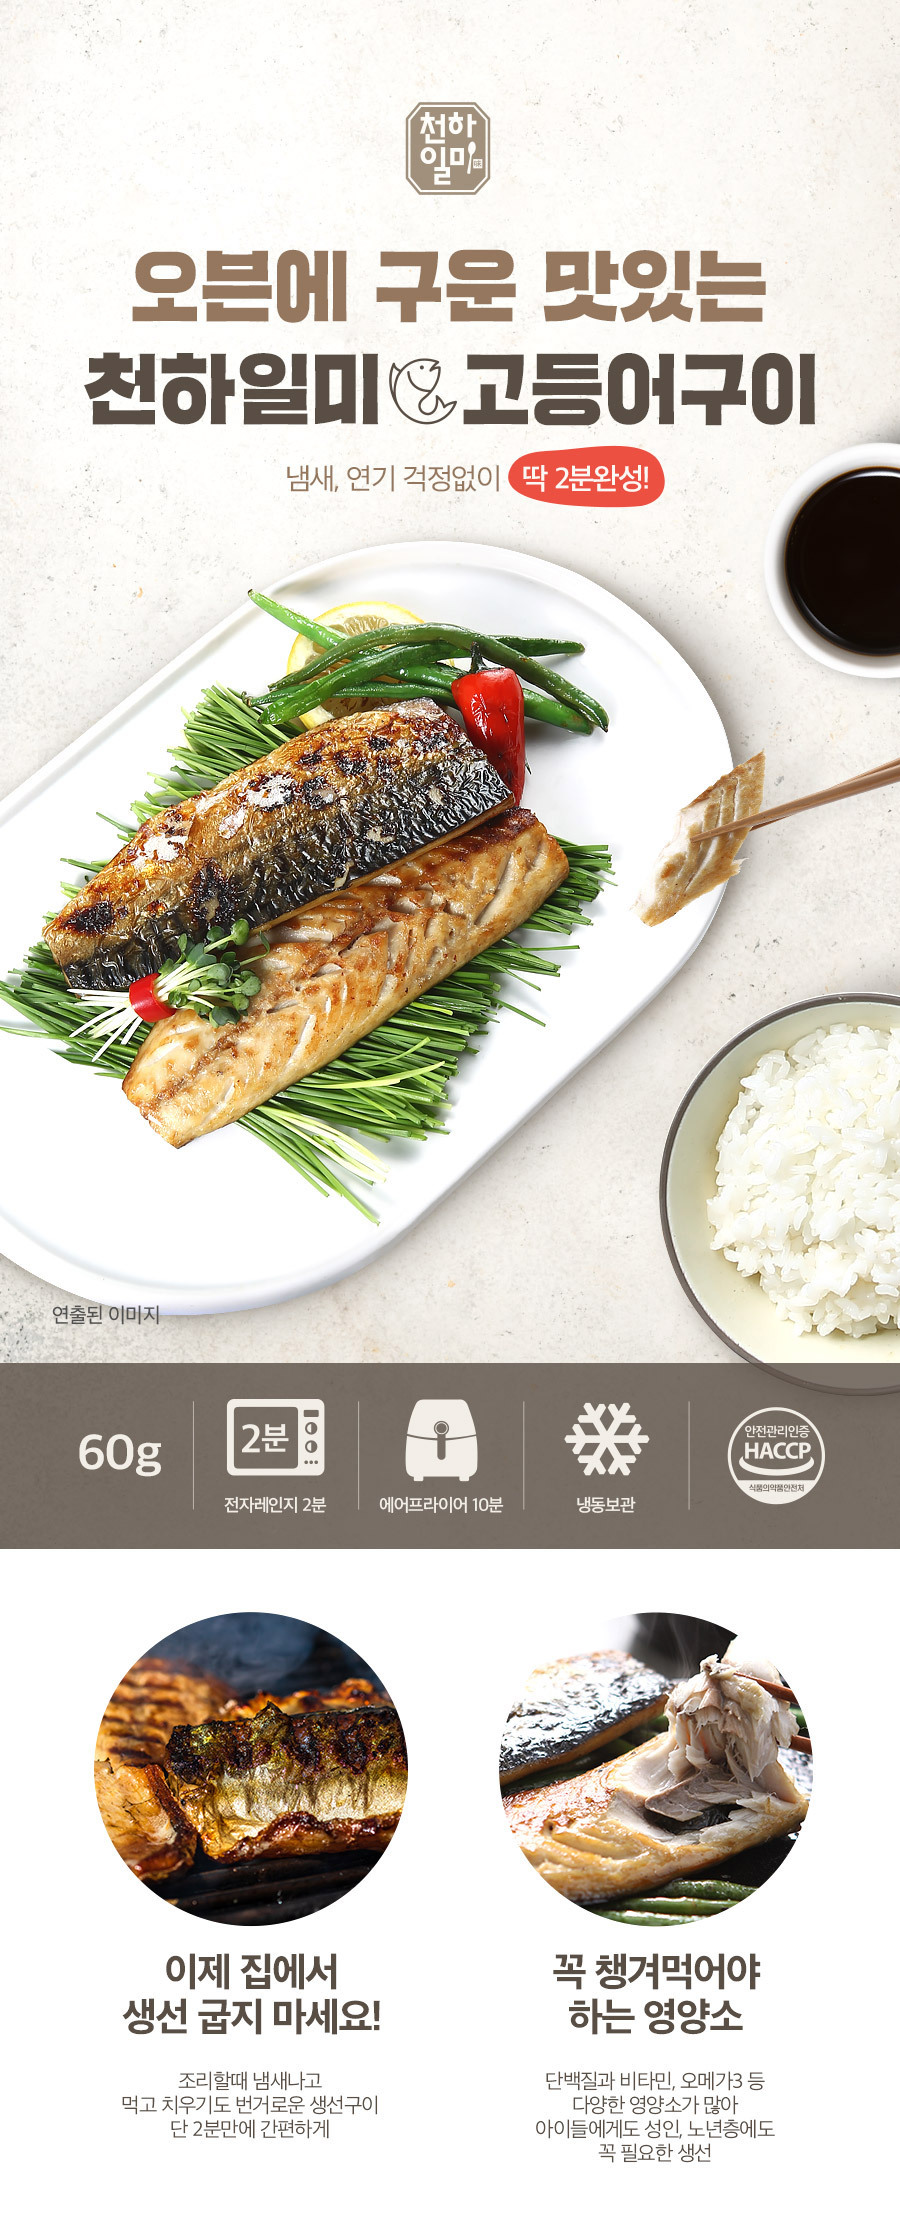 Gmarket - [천하일미]홍석천 이원일 오븐에 구운 생선구이 고등어 4팩